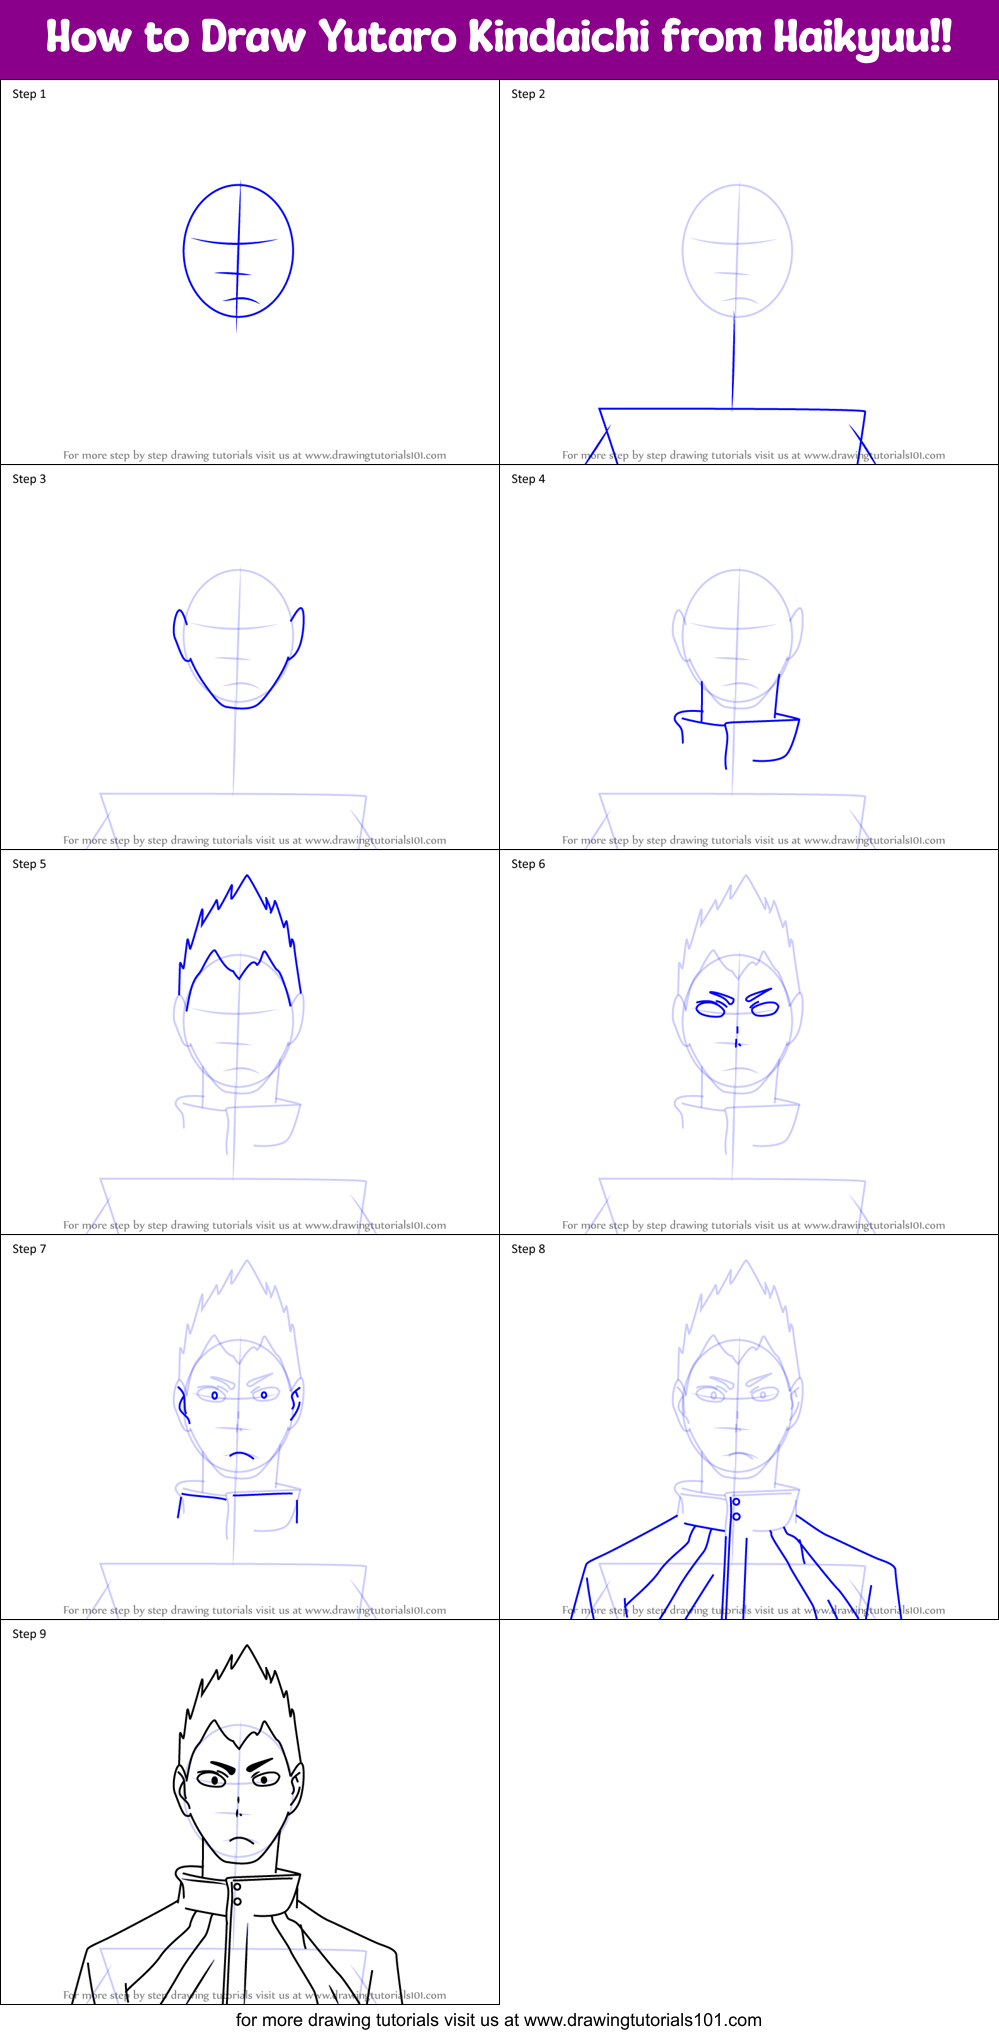 How to Draw Yutaro Kindaichi from Haikyuu!! (Haikyuu!!) Step by Step ...